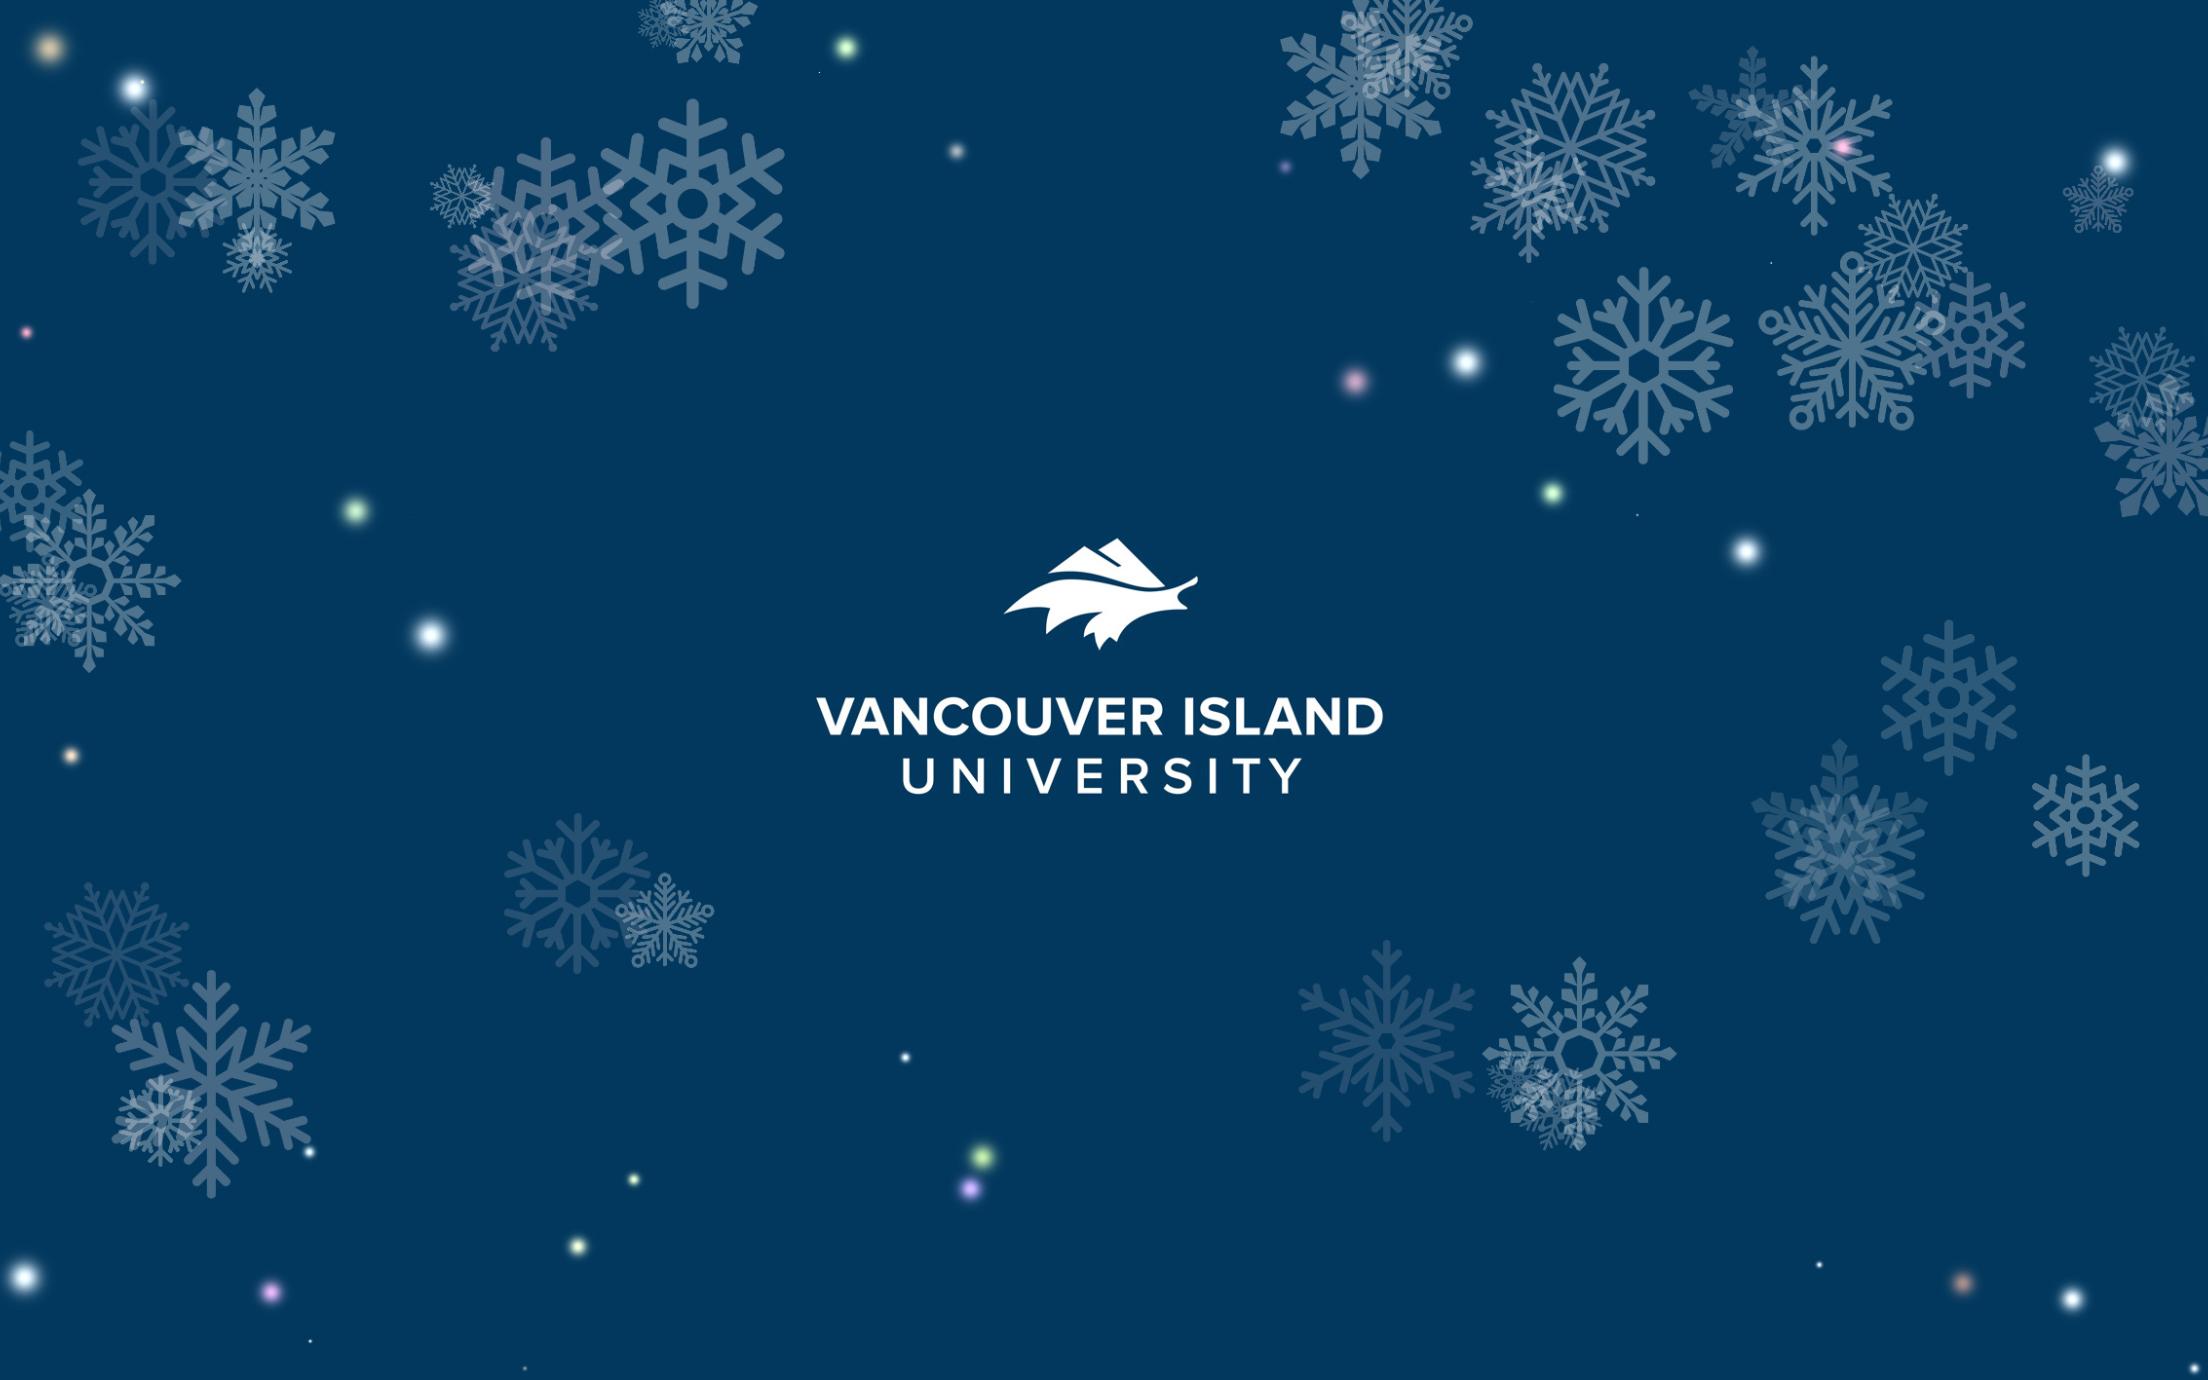 VIU logo with snowflakes